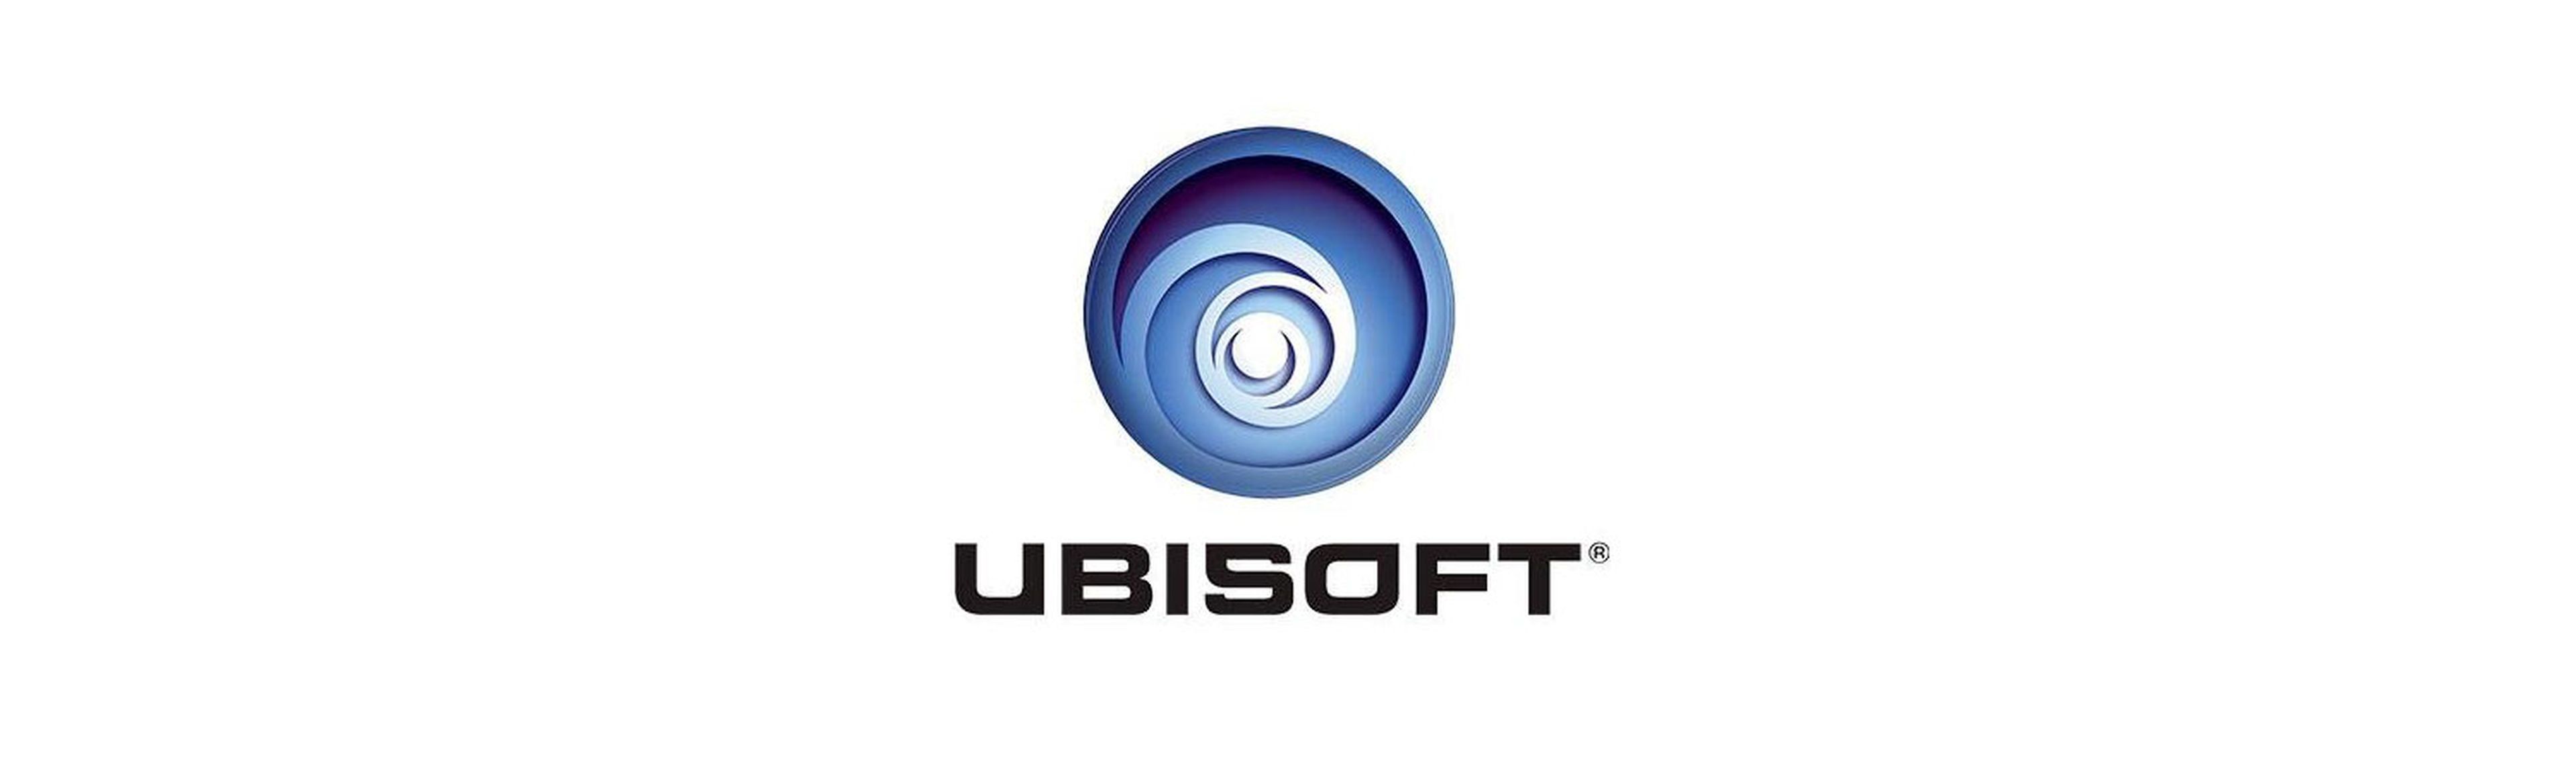 Ubisoft ha contado con su propio espacio en Madrid Games Week este año